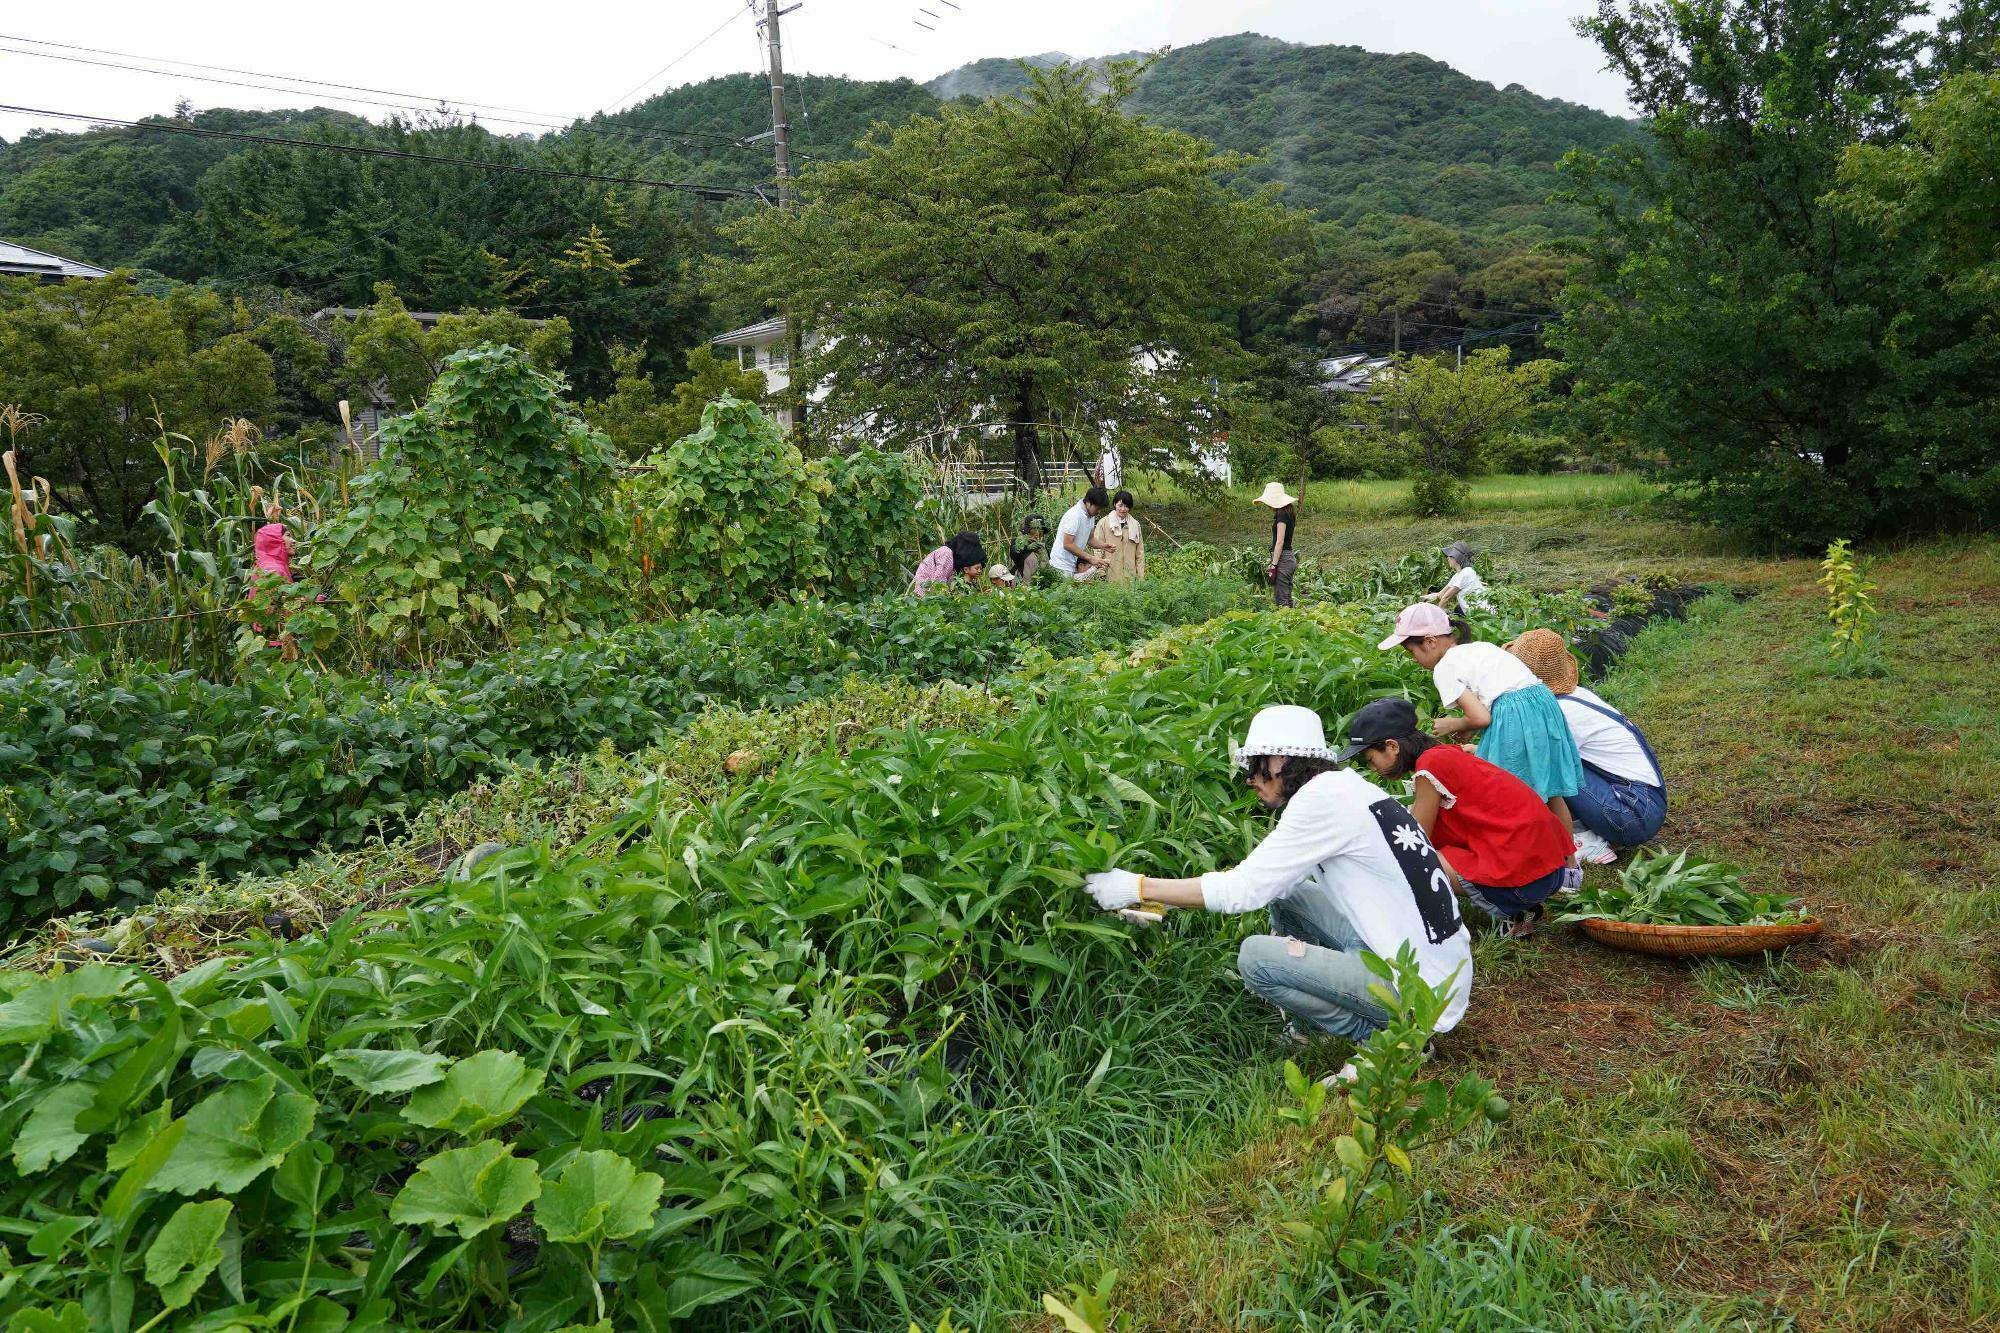 『原点回帰』メンバーと一緒に『菌ちゃん農法』を実践した佐賀県神崎の畑